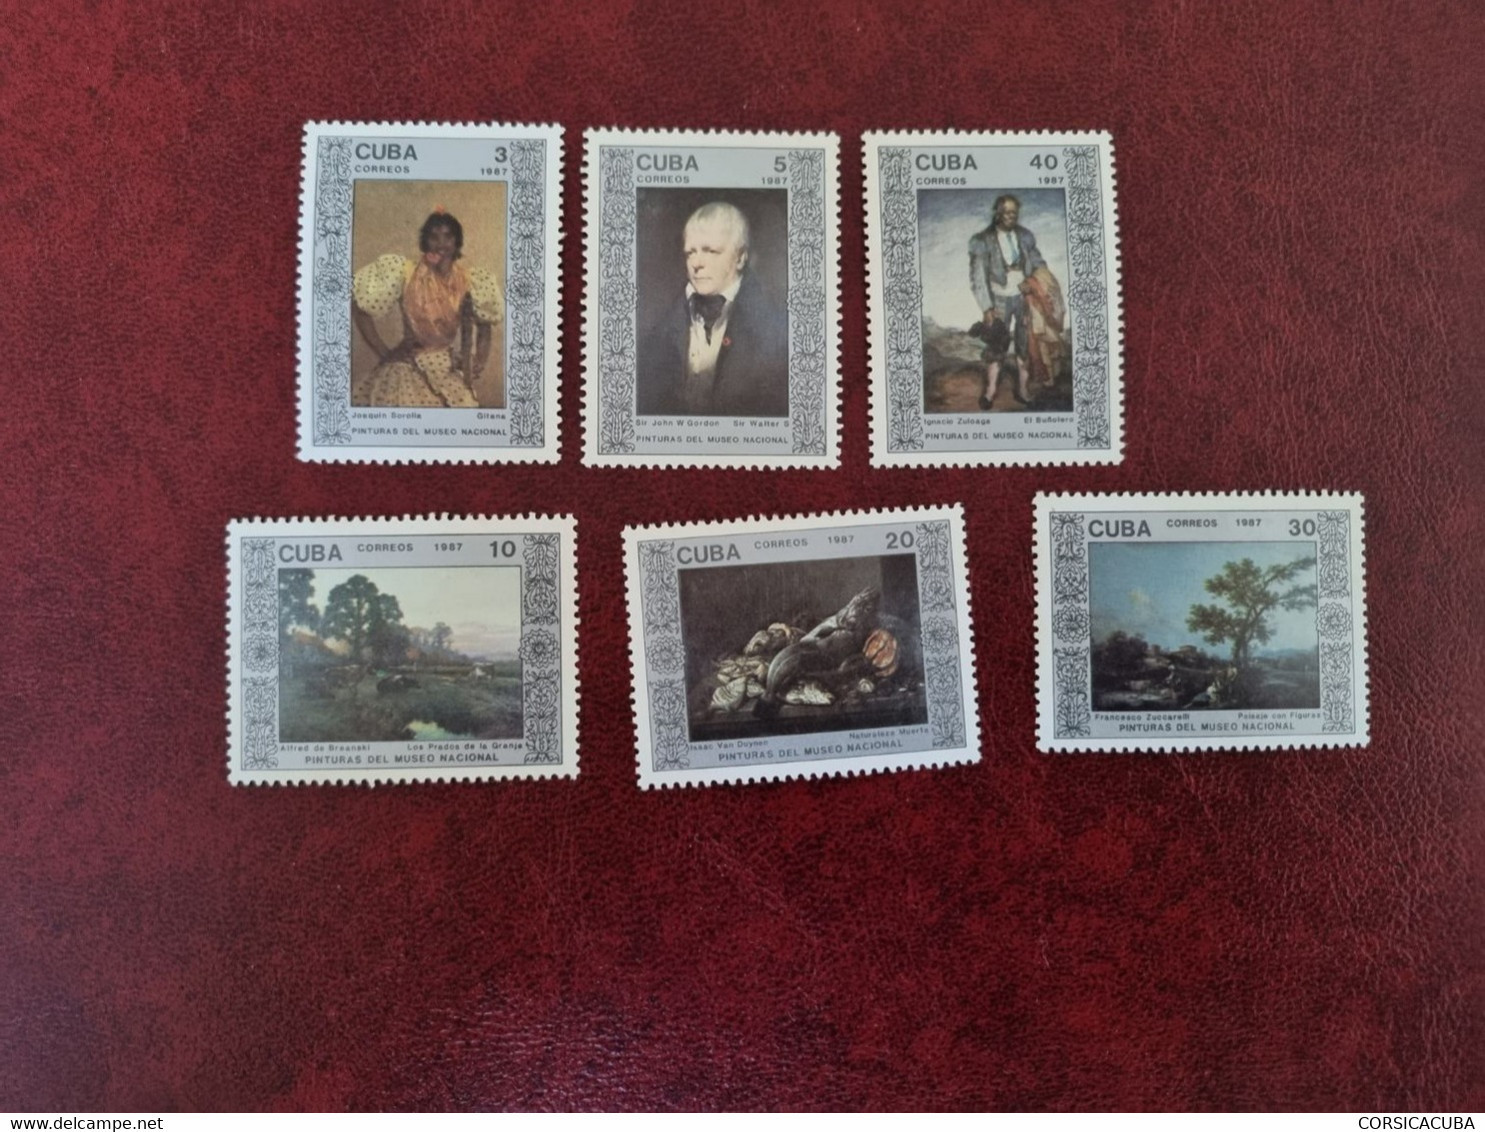 CUBA  NEUF  1987  PINTURAS  MUSEO  NACIONAL //  PARFAIT  ETAT  //  1er  CHOIX  // Avec Sa Gomme - Unused Stamps